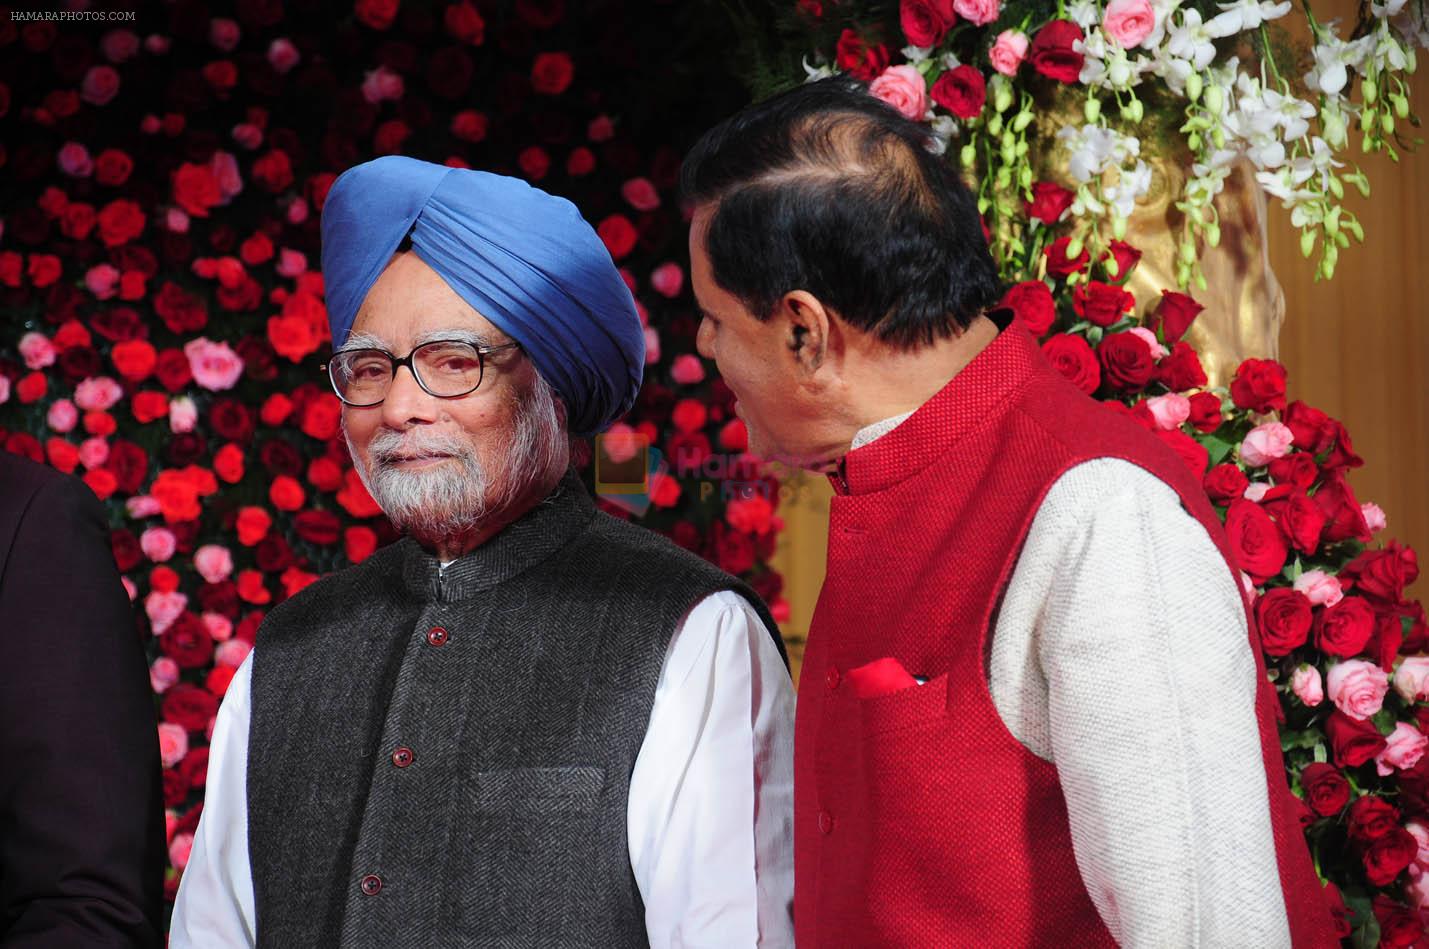 Manmohan Singh at Reddy son wedding reception in Delhi on 21st Feb 2015